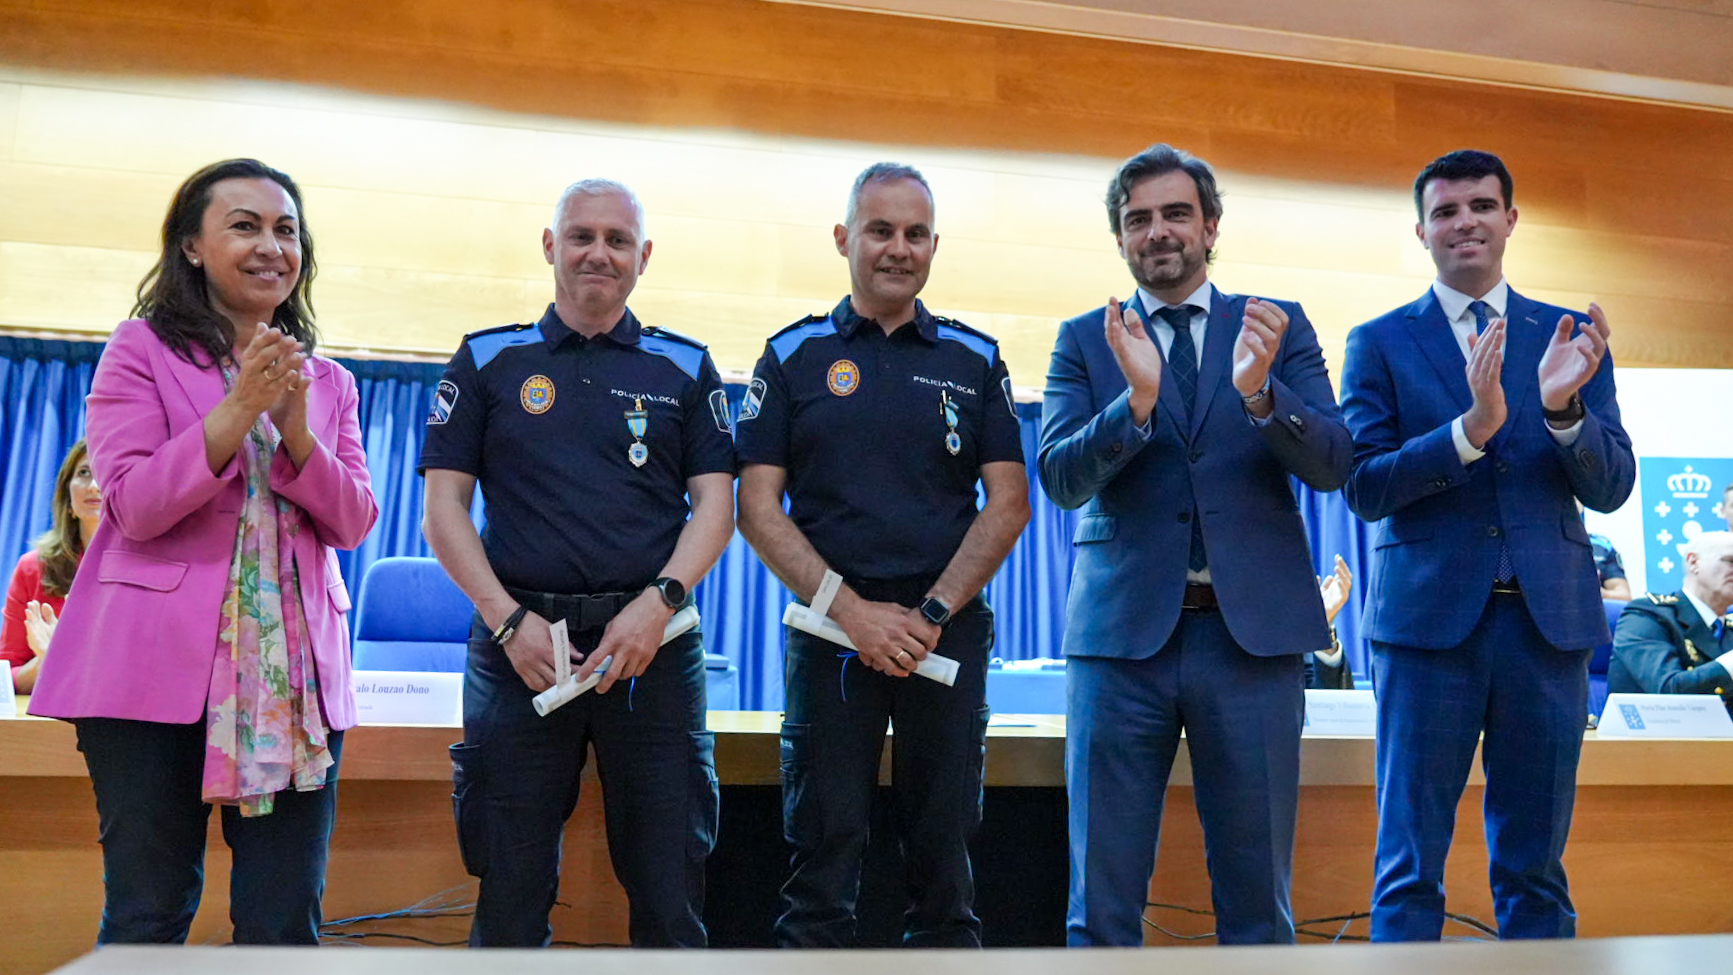 Image 0 of article A Xunta sinala os valores policiais como garantes da seguridade e do benestar da cidadanía